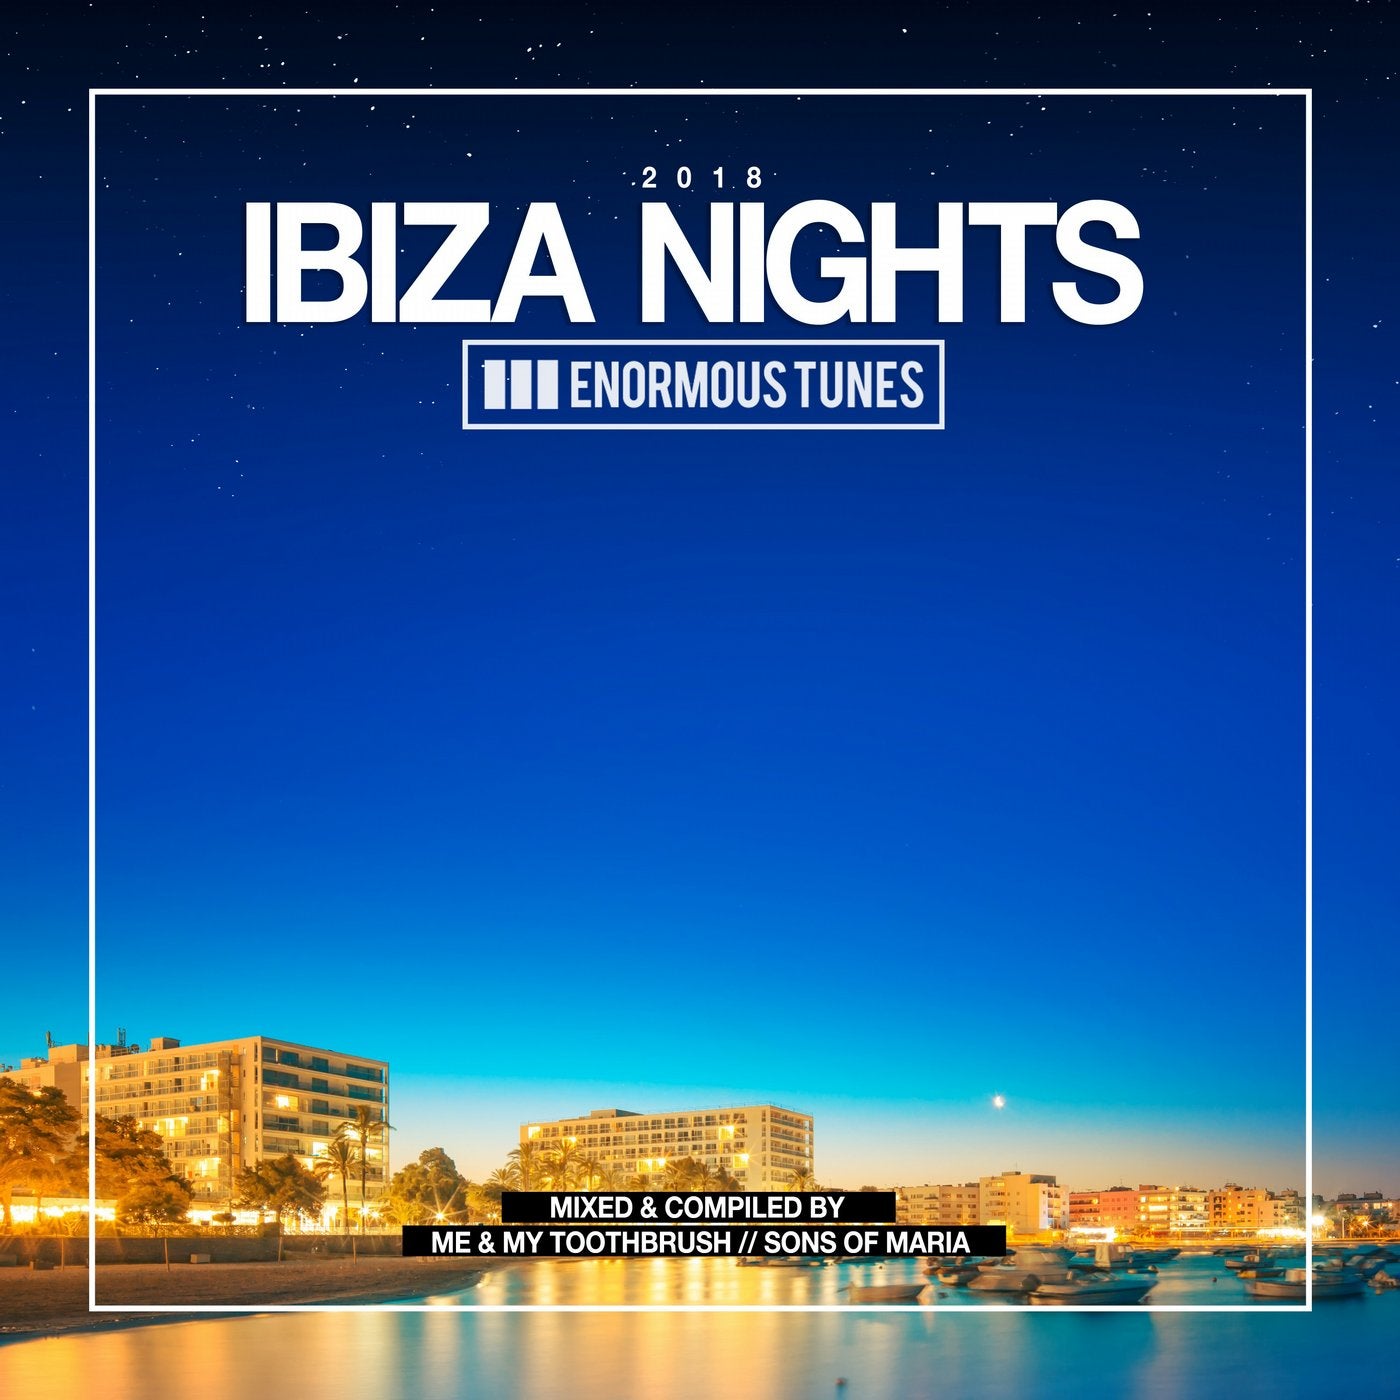 Enormous Tunes. Ibiza Night. Ibiza Night описание. Revealed и enormous Tunes..